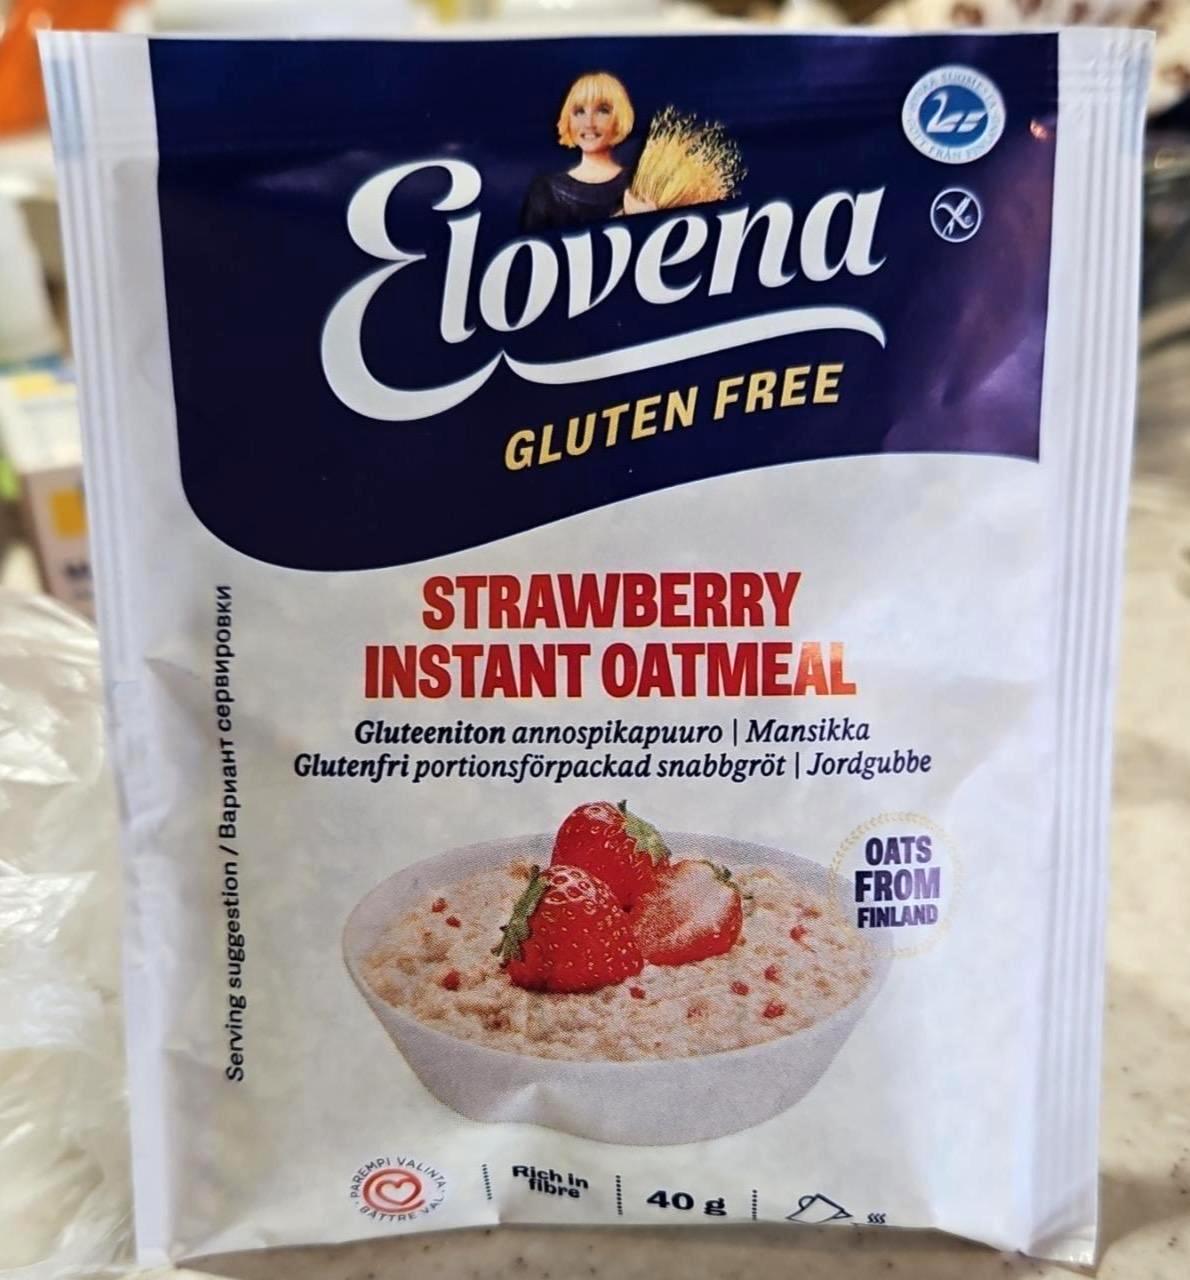 Képek - Strawberry instant oatmeal Elovena